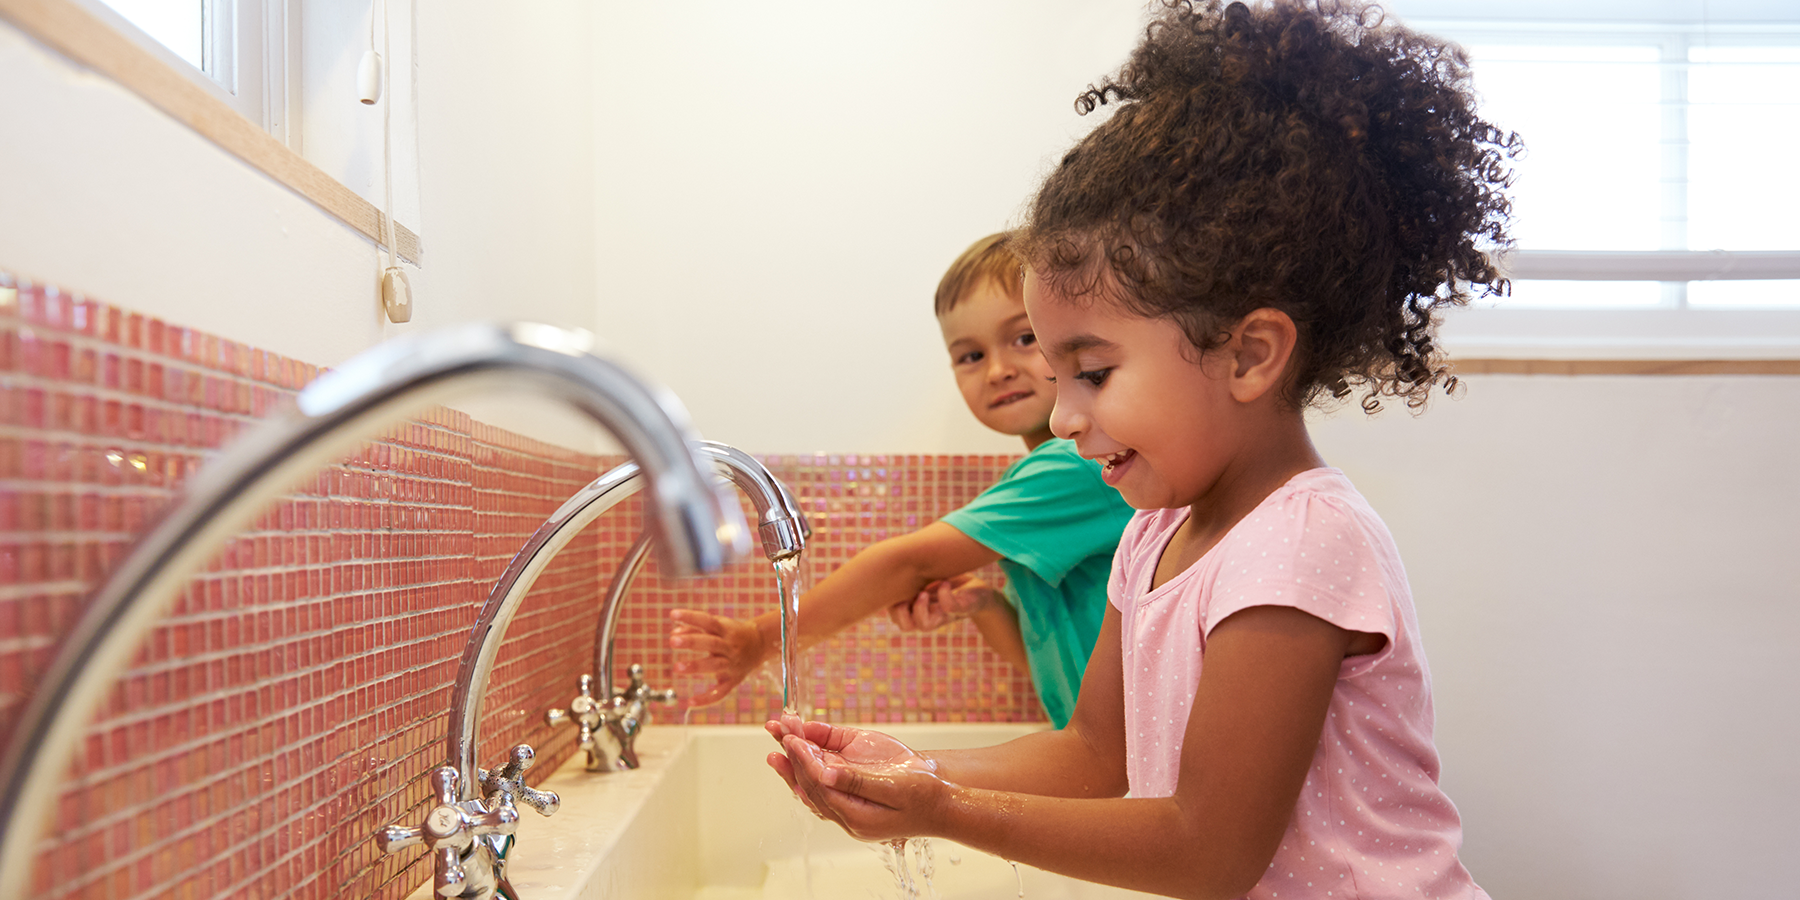 How Do You Teach Kids About Hygiene